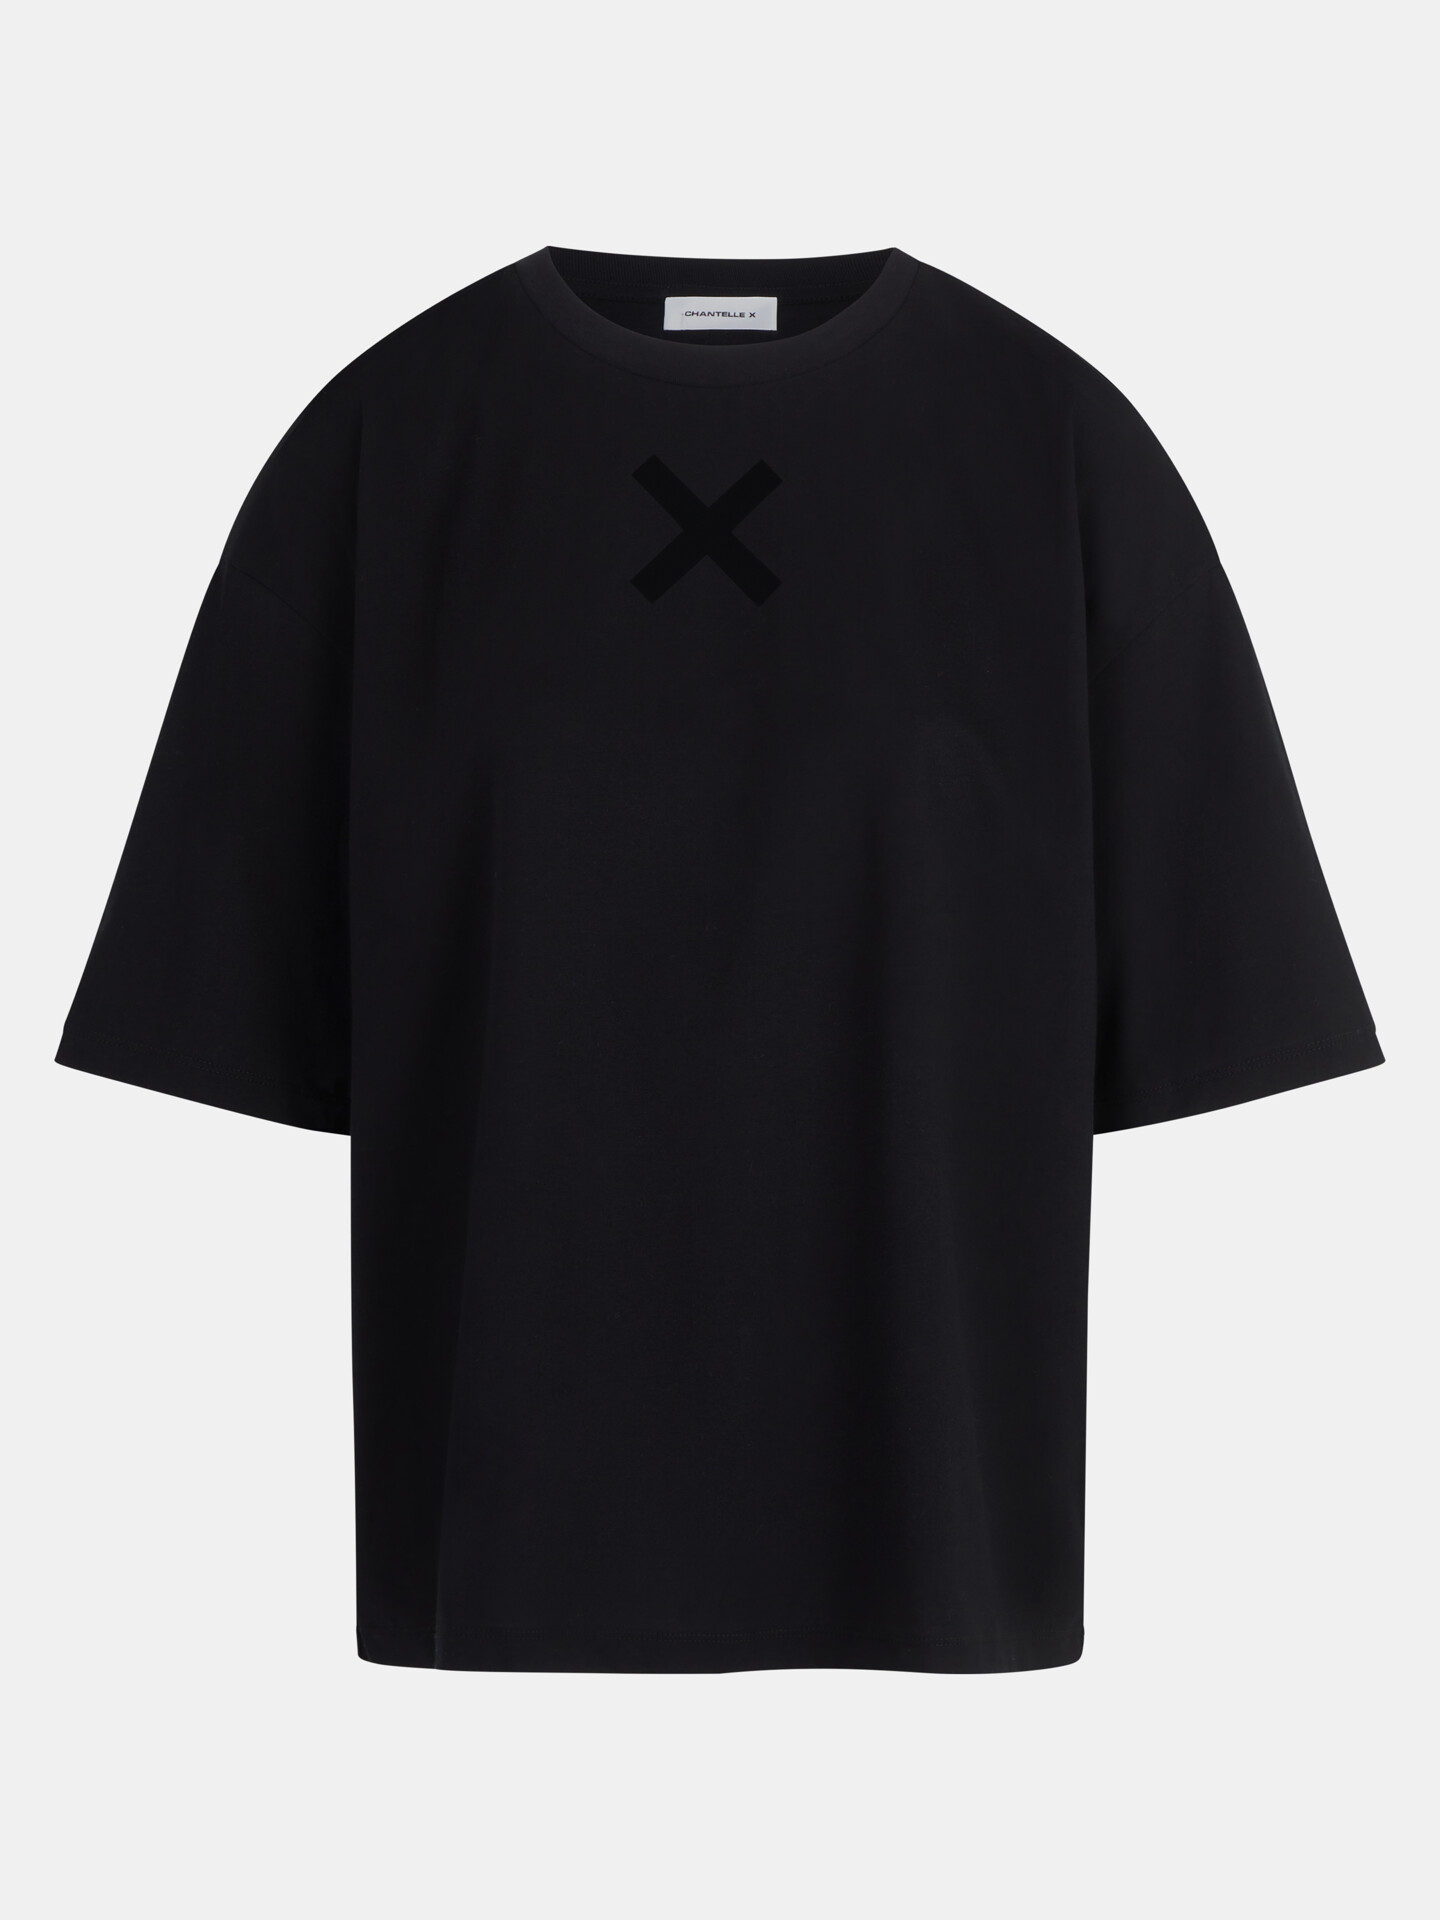 Tričko CHANTELLE X (016J5-02), Barva černá, Velikost L